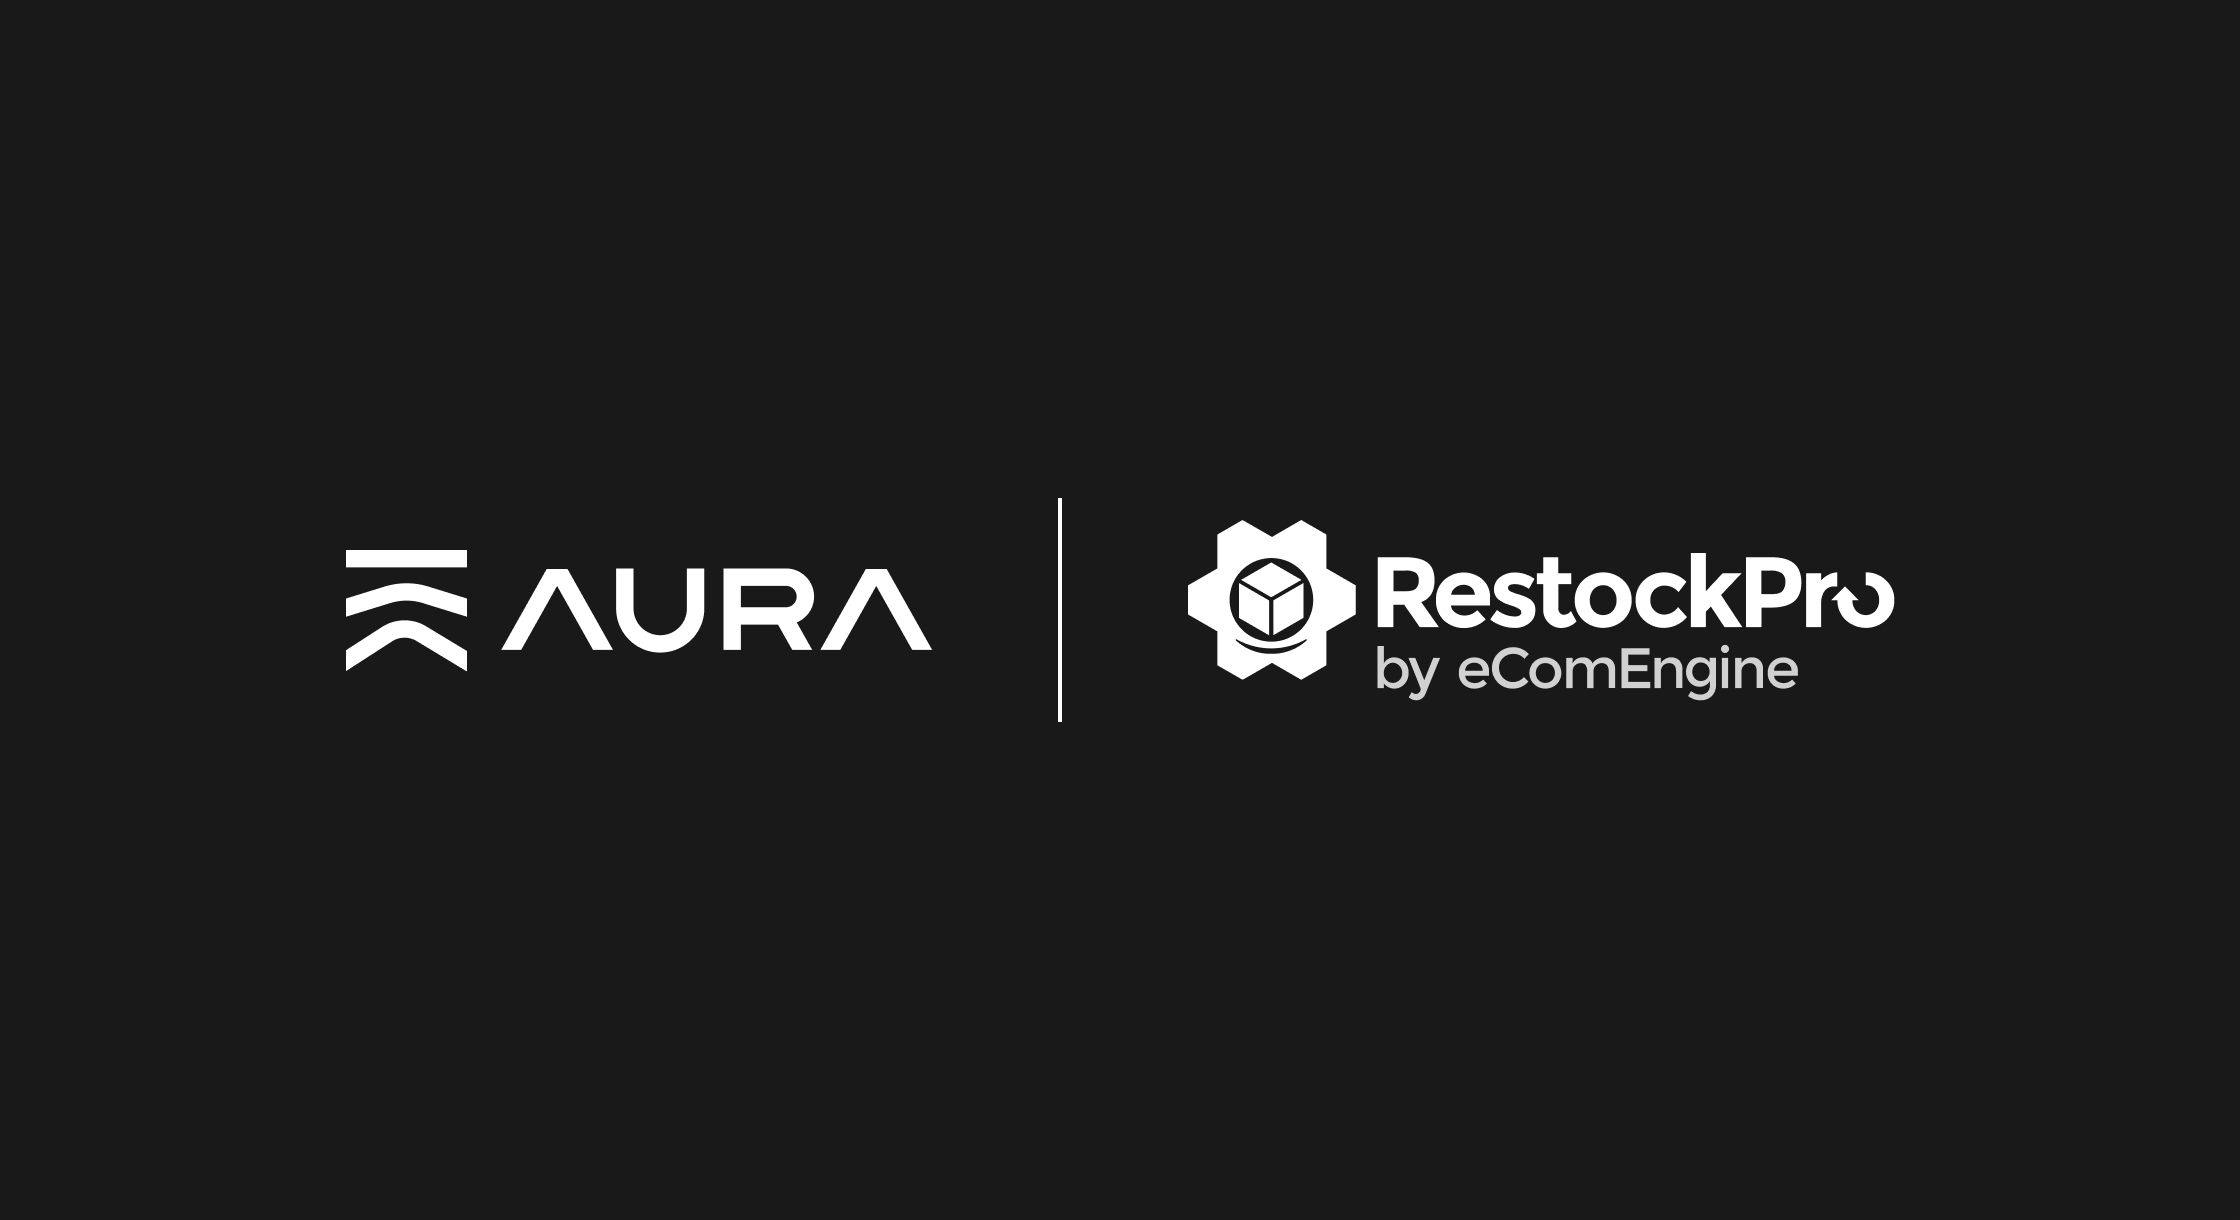 Announcing Aura's New RestockPro Integration